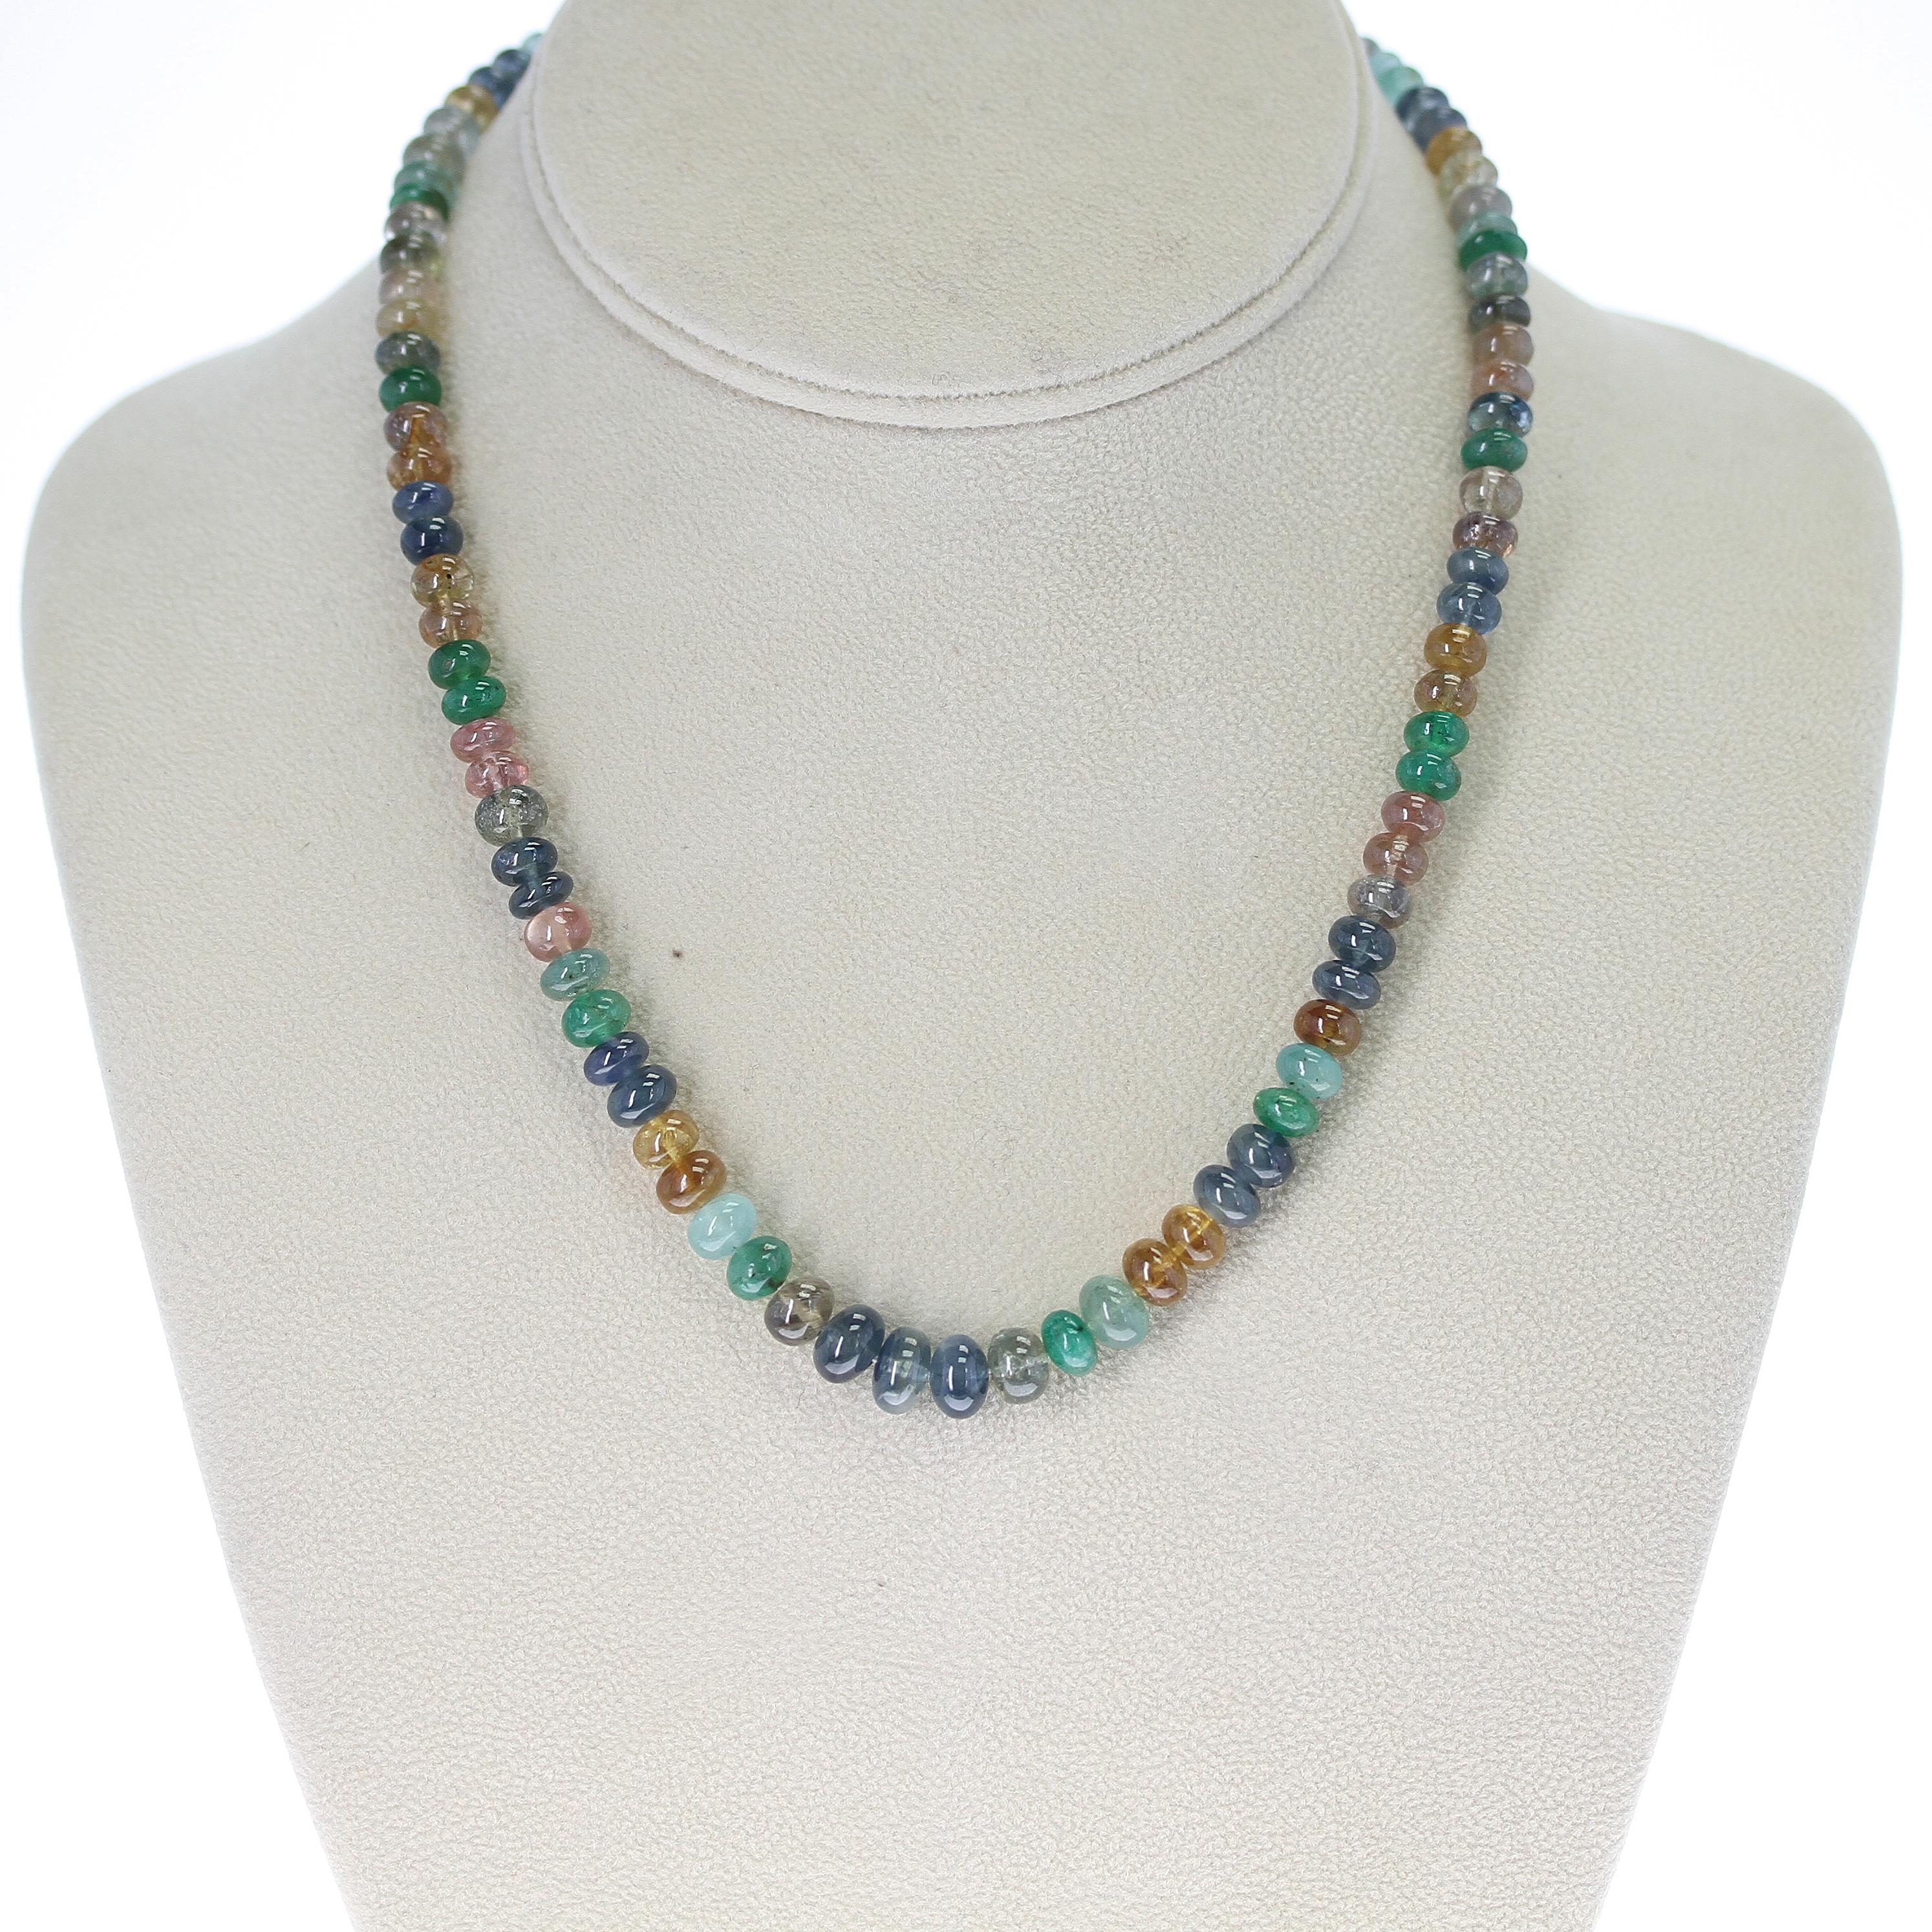 Eine echte & natürliche glatte mehrfarbige Saphir und Smaragd Perlen Halskette mit einem 14K Verschluss, mit einem Gewicht von 180 Karat. Die Länge beträgt 17 Zoll und die Größe der Perlen reicht von 6MM bis 8MM. 

Wir können die Kette auch nach